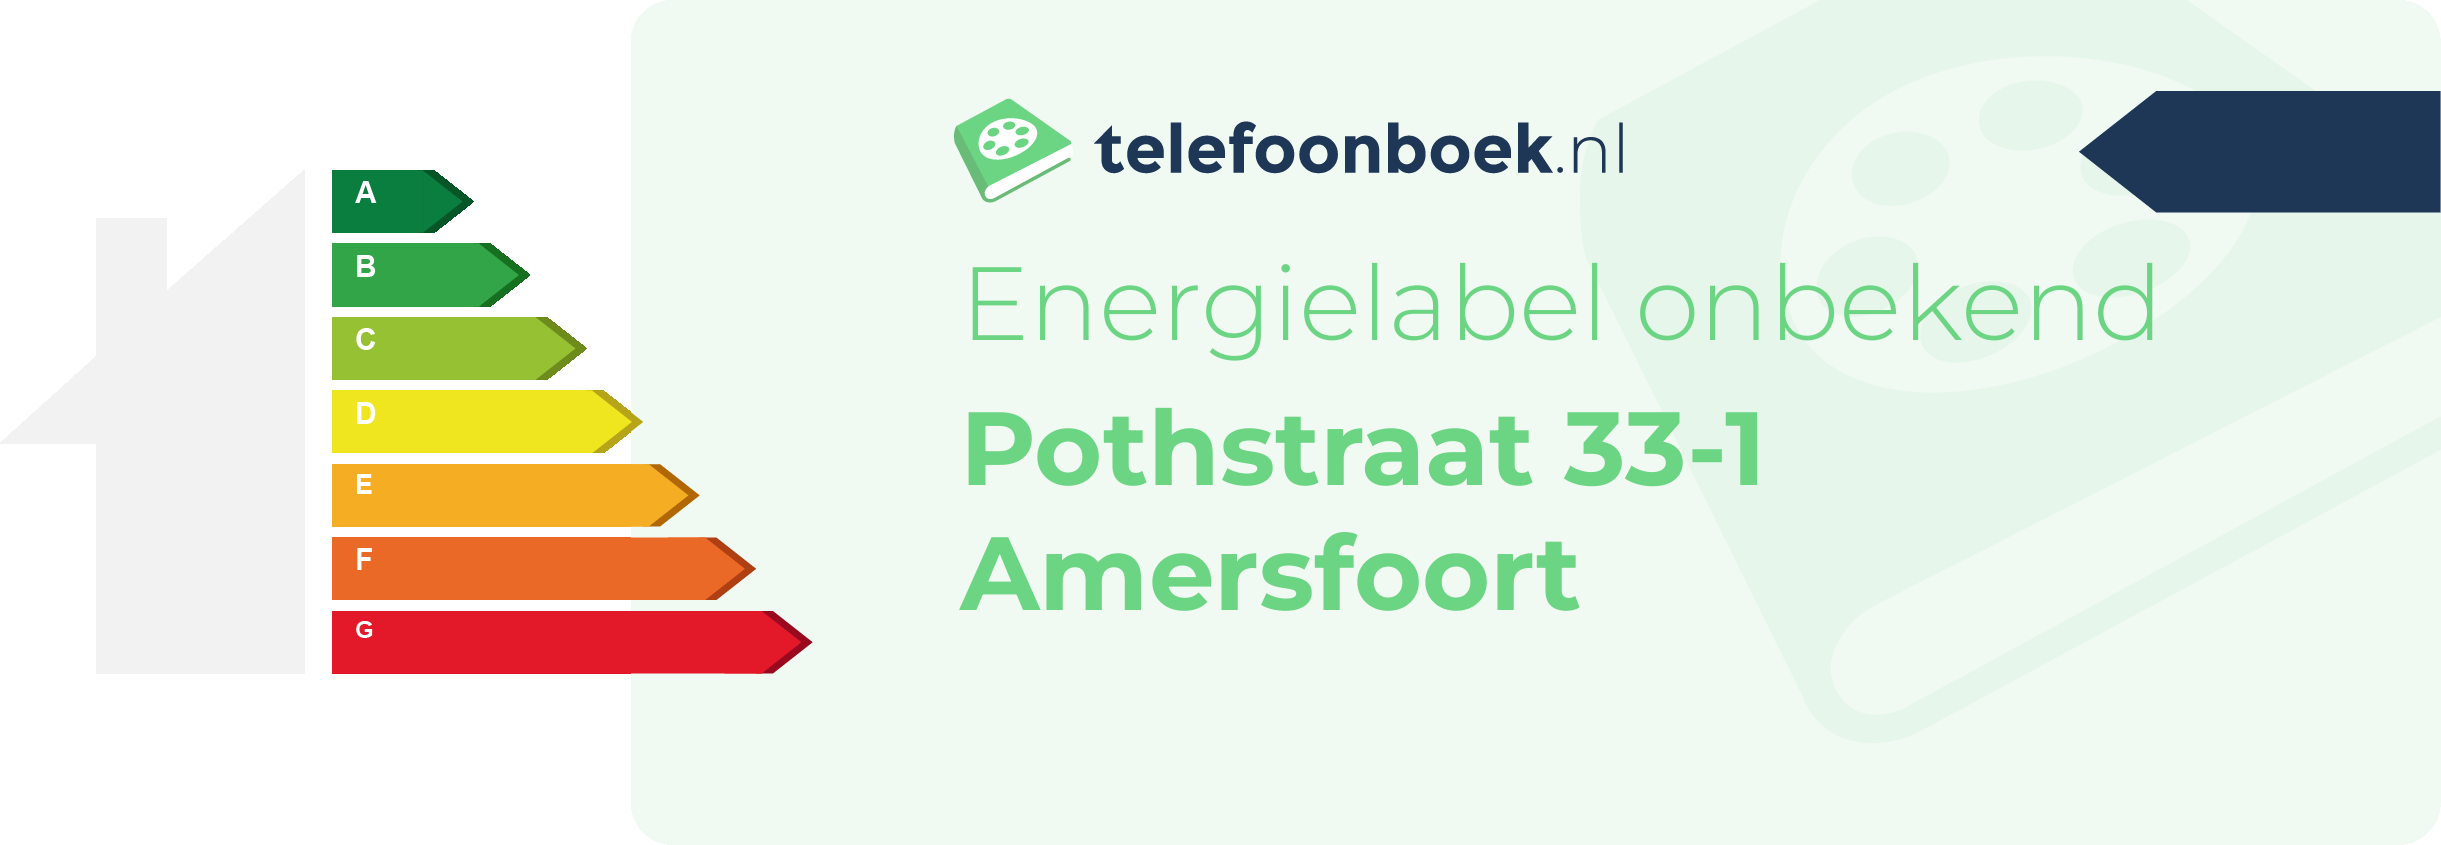 Energielabel Pothstraat 33-1 Amersfoort